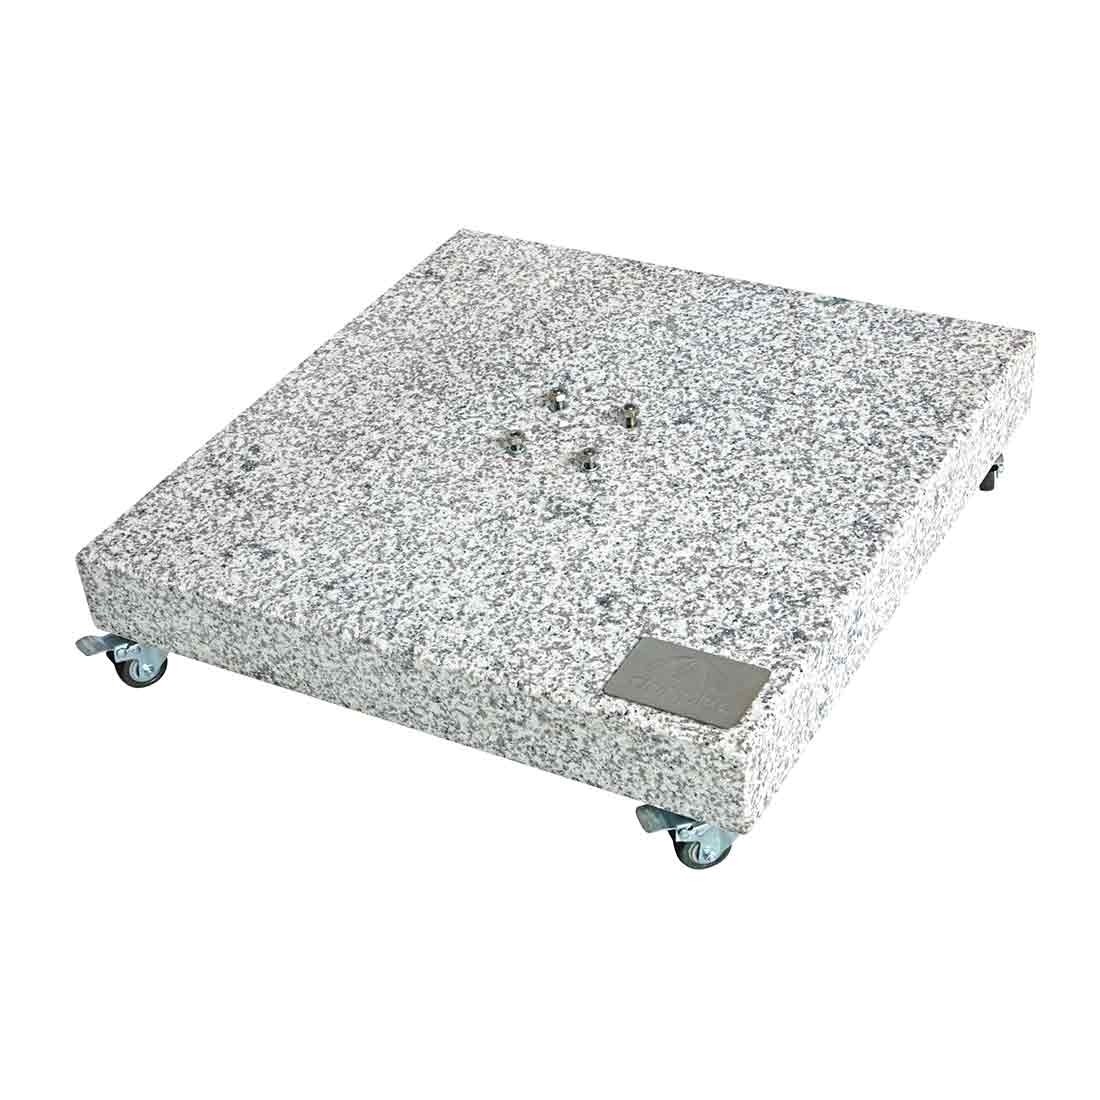 Doppler Granit Grundplatte ca. 140kg, 80x80x8/14cm mit Rollen, Farbe grau, mit 4 Rollen